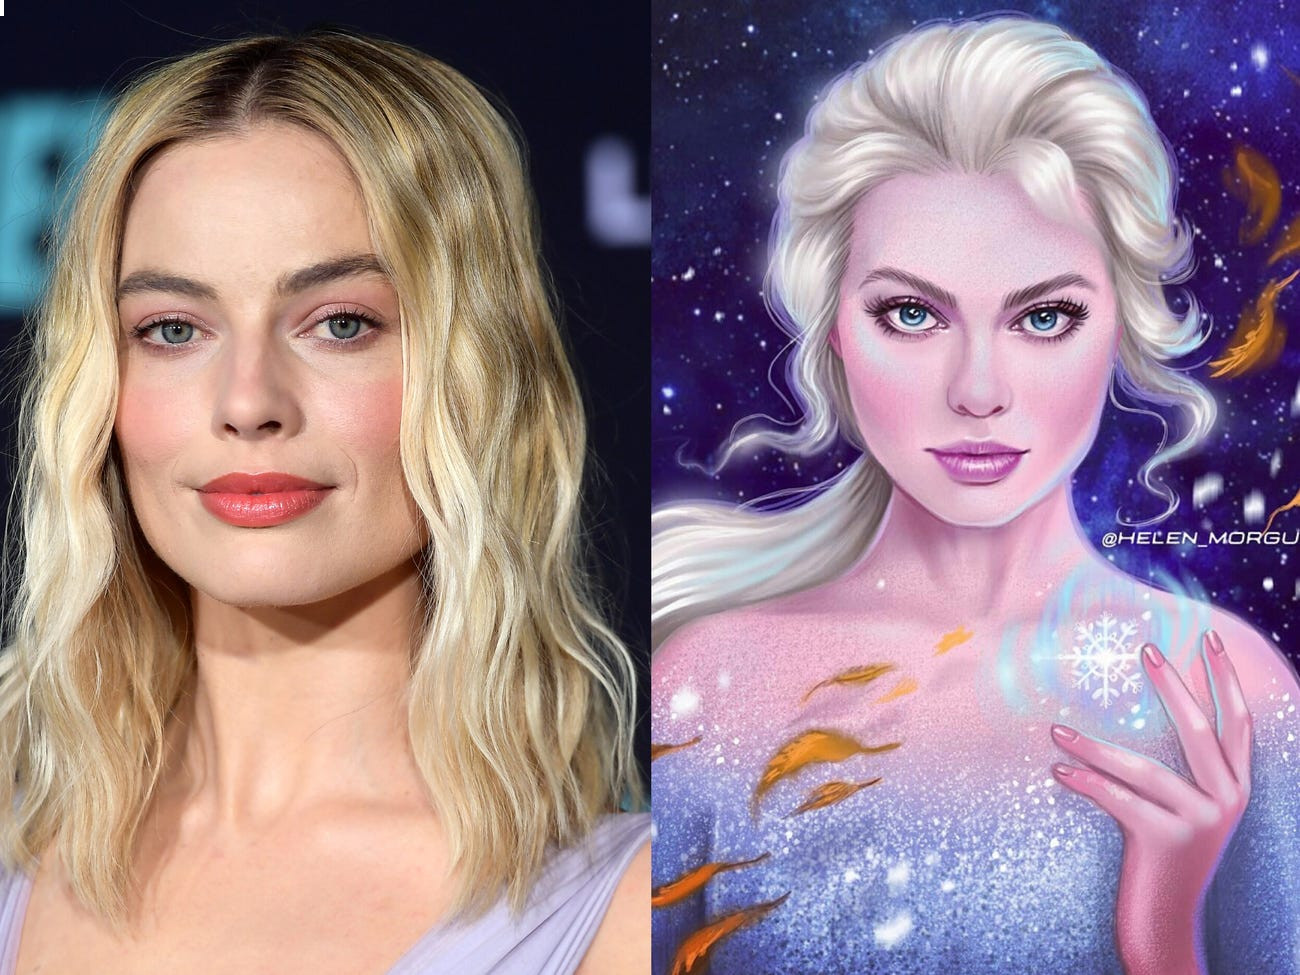 Celebrities transform into Disney characters in fan arts